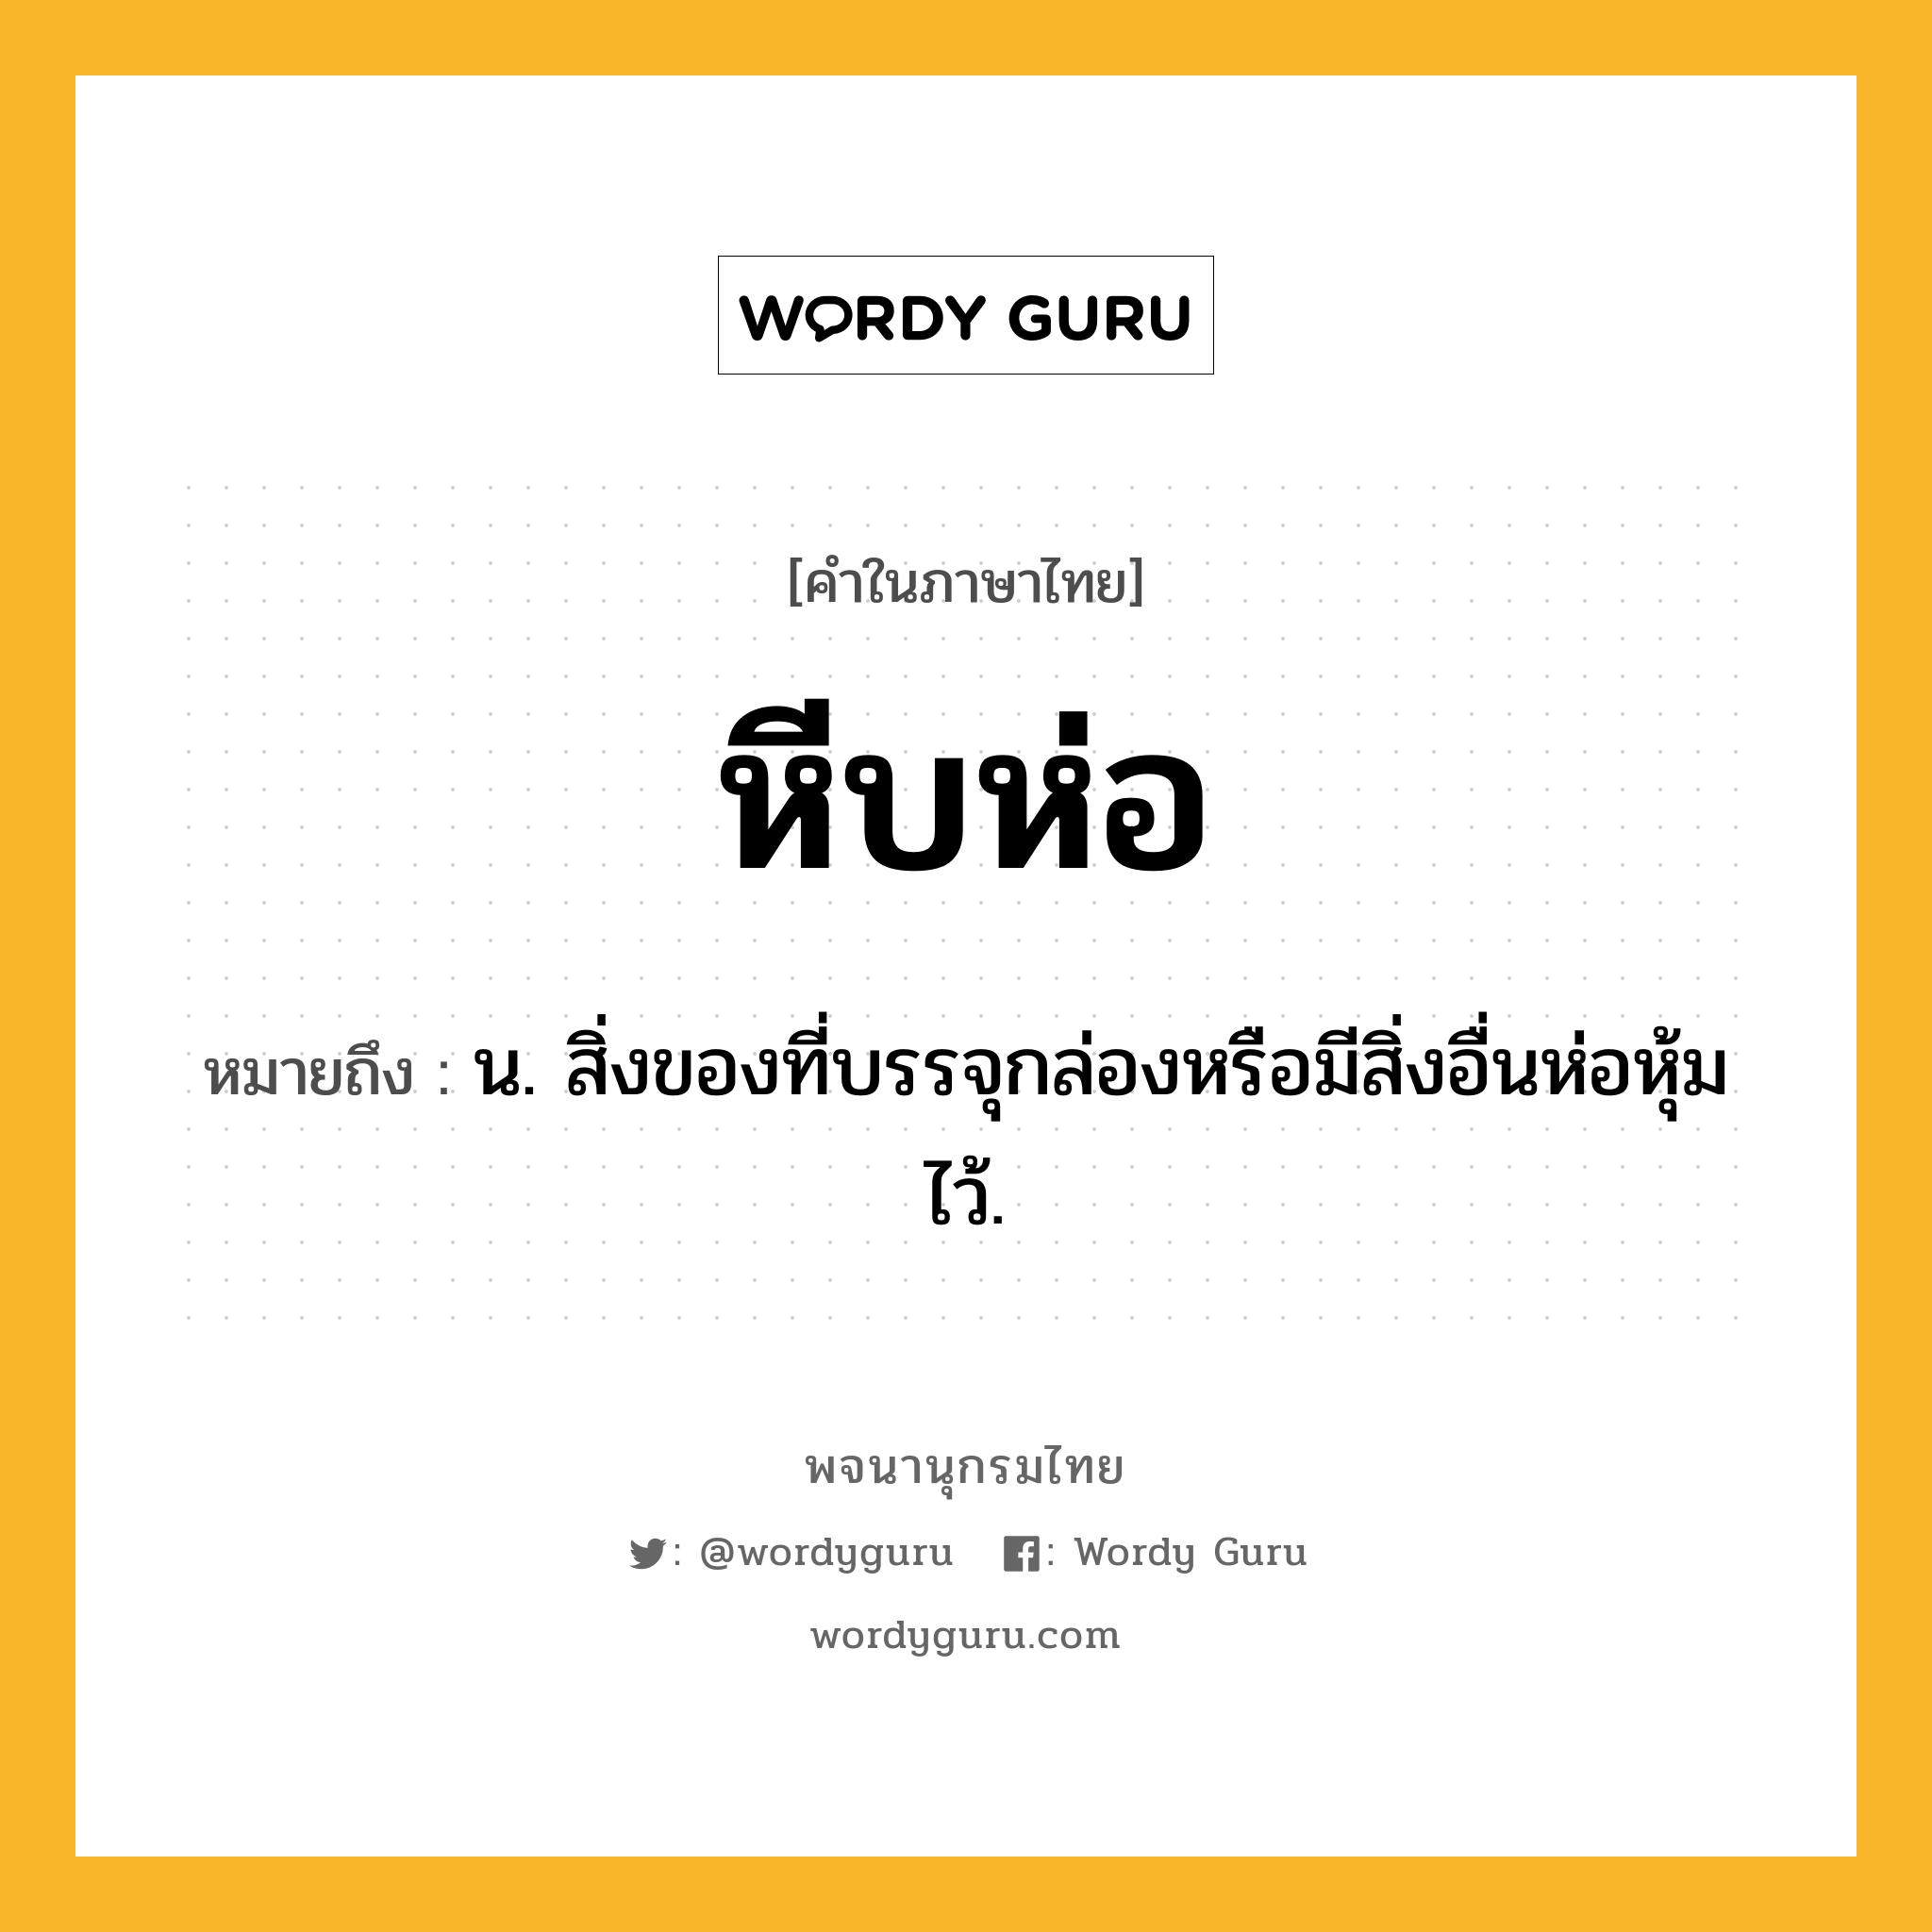 หีบห่อ หมายถึงอะไร?, คำในภาษาไทย หีบห่อ หมายถึง น. สิ่งของที่บรรจุกล่องหรือมีสิ่งอื่นห่อหุ้มไว้.